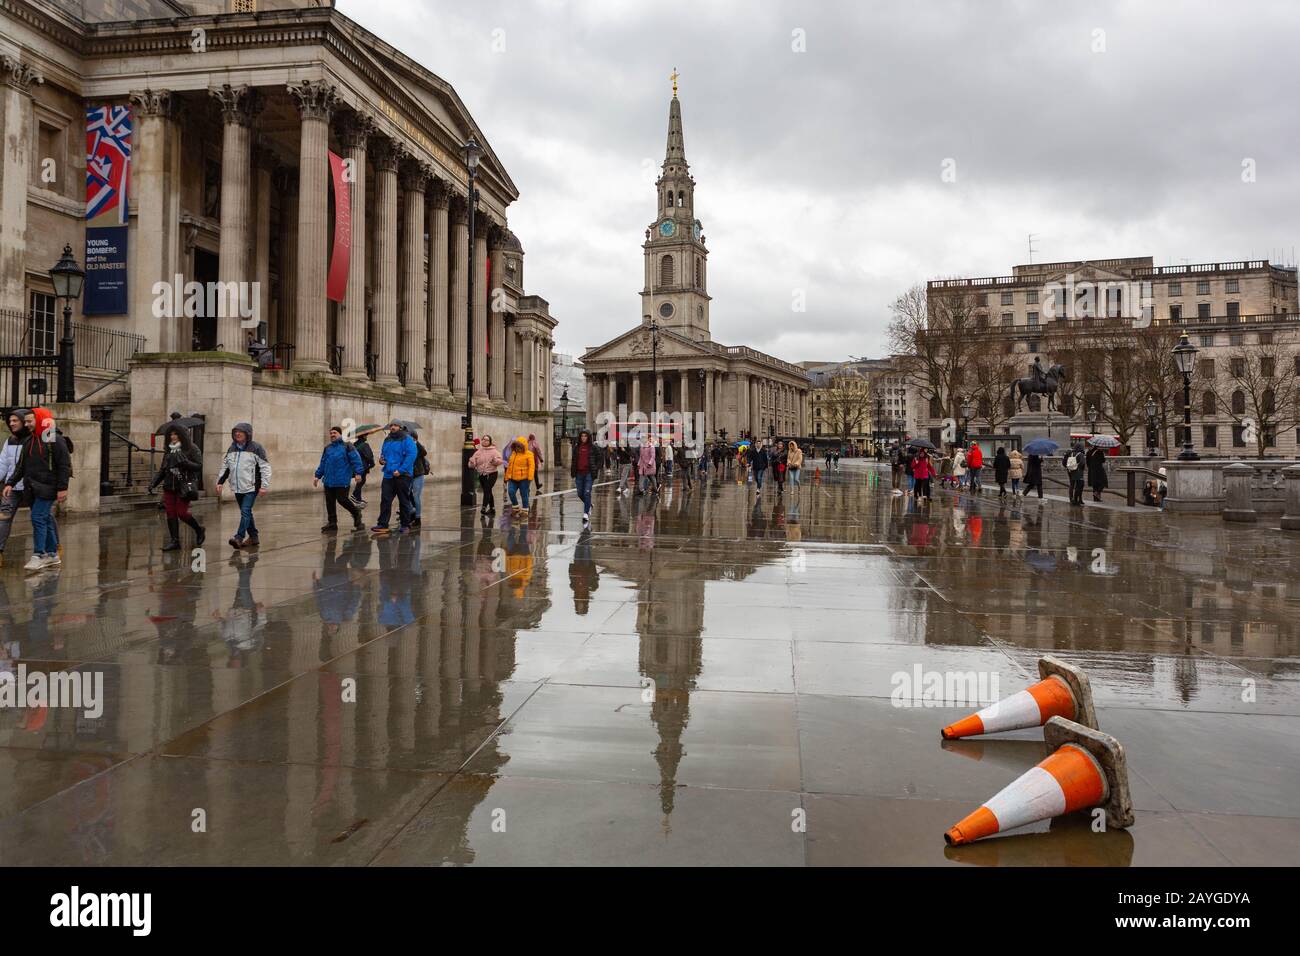 Londres, Royaume-Uni. 15 février 2020. Pluie et vent croissant dans le centre de Londres, avant l'arrivée de la tempête Denis. Penelope Barritt/Alay Live News Banque D'Images